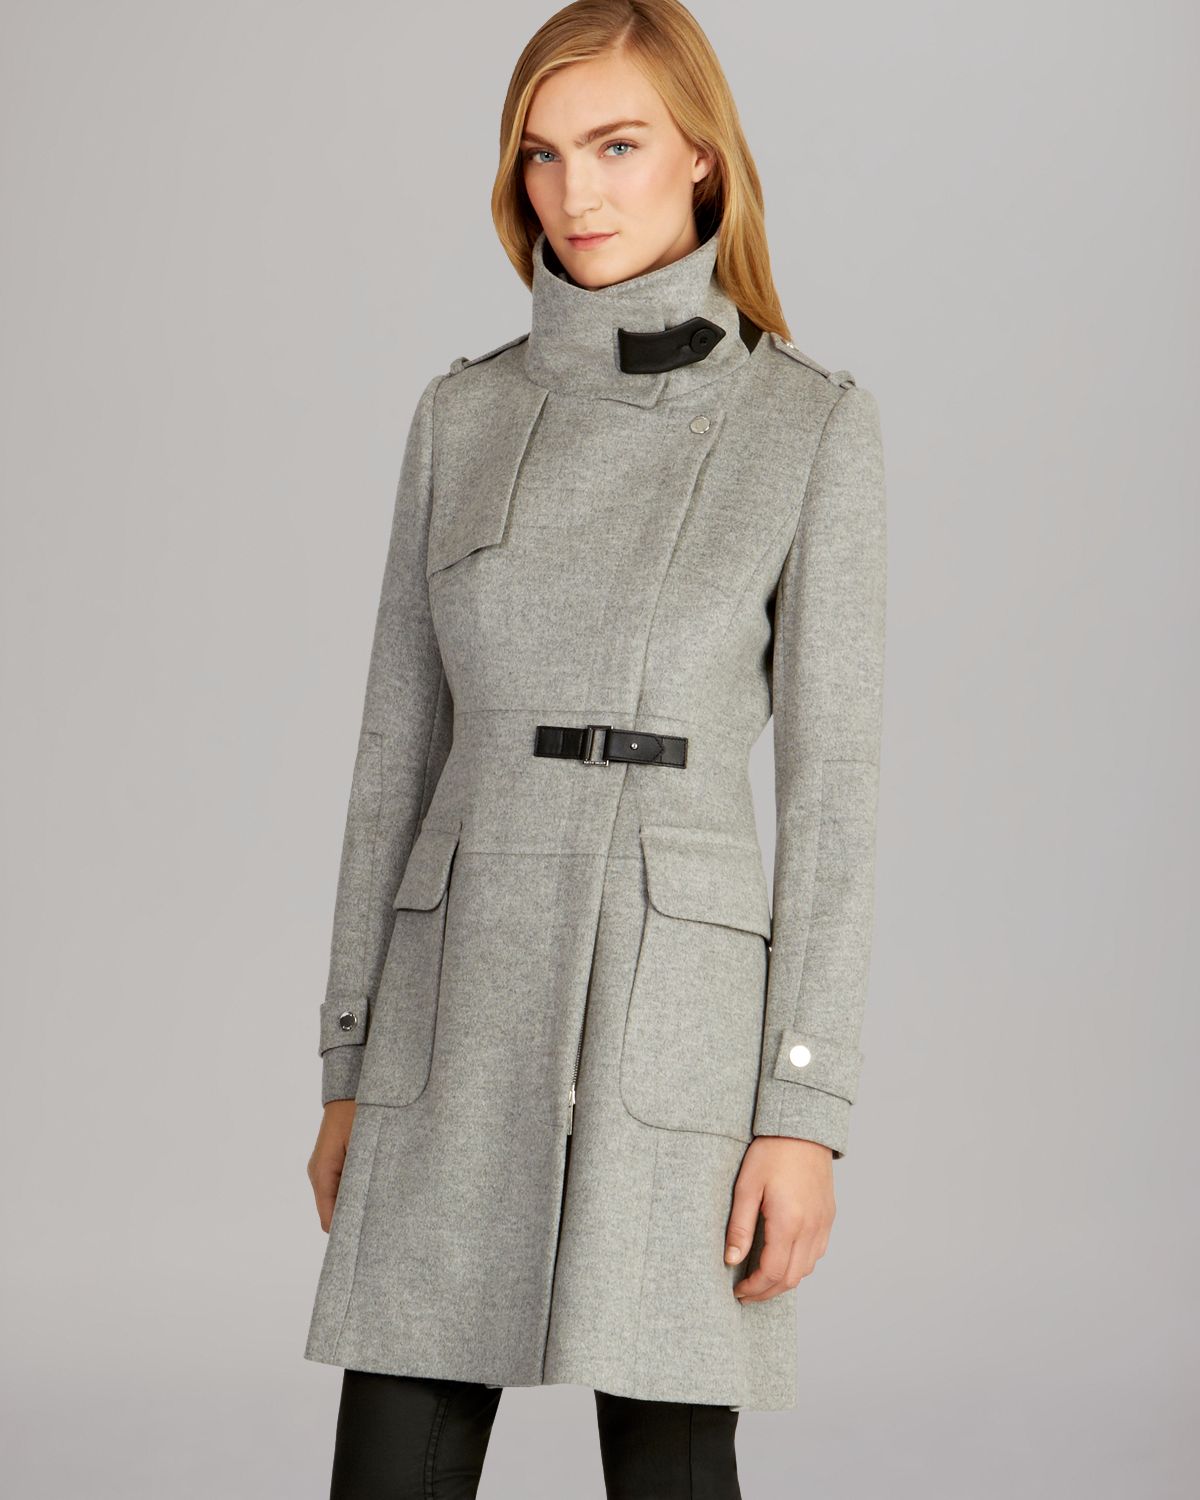 Lyst - Karen Millen Fashion Investment Coat in Gray